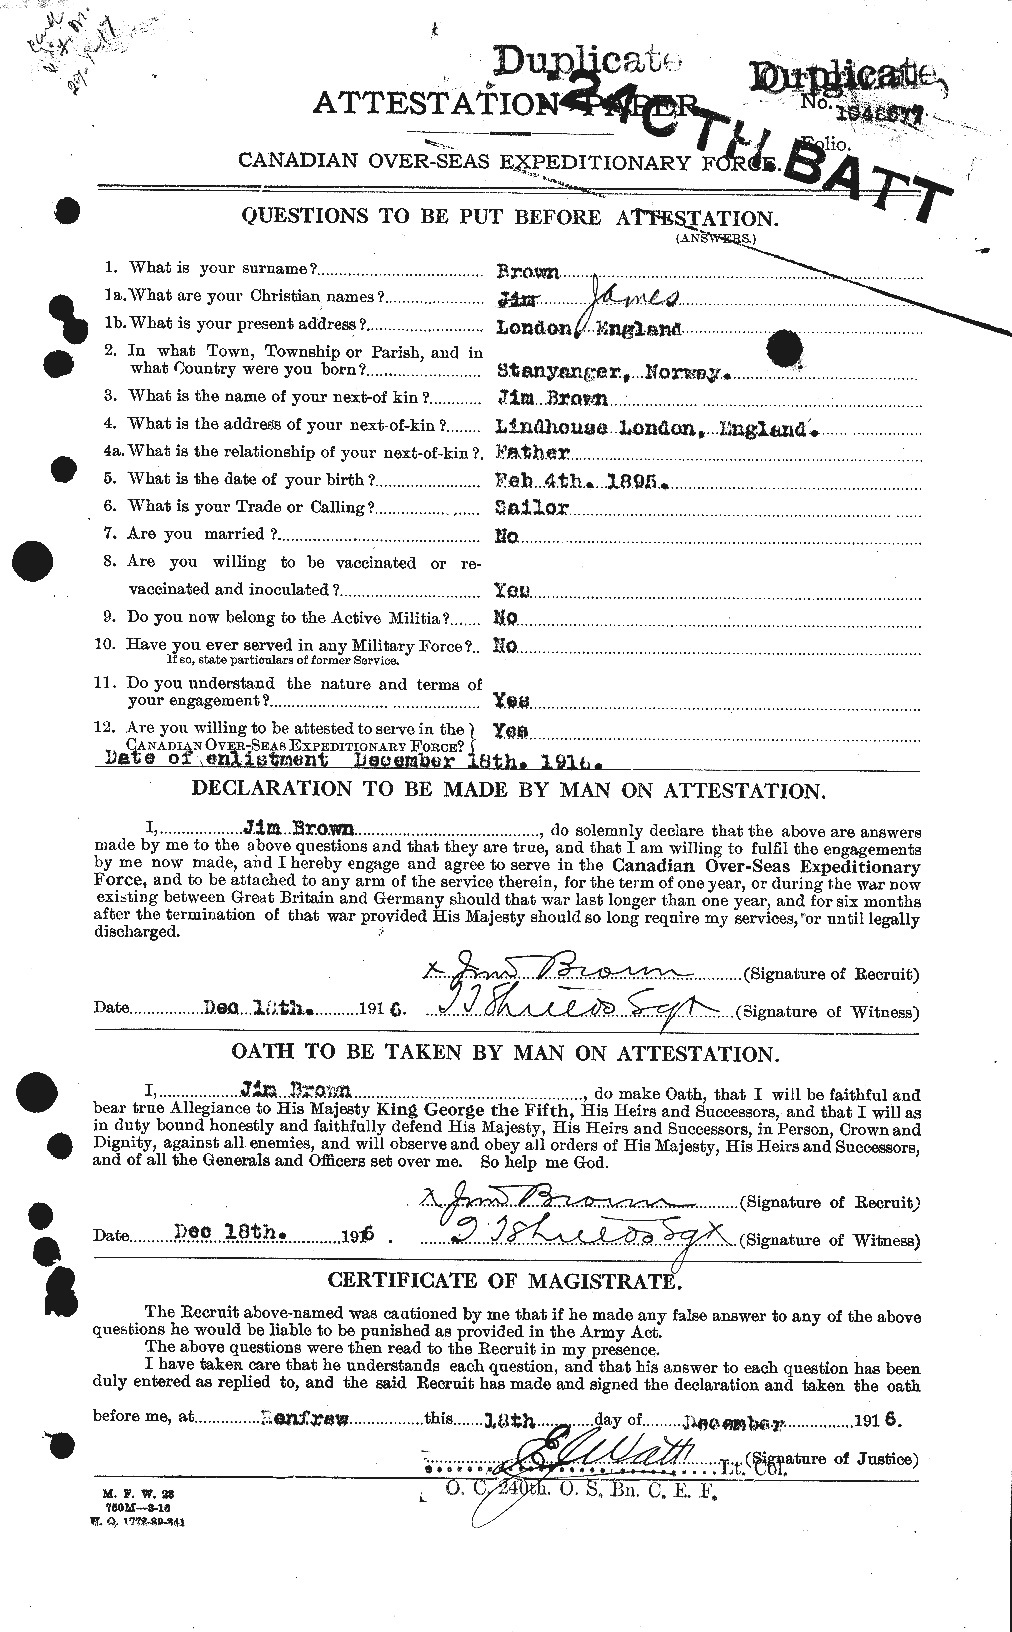 Dossiers du Personnel de la Première Guerre mondiale - CEC 265766a